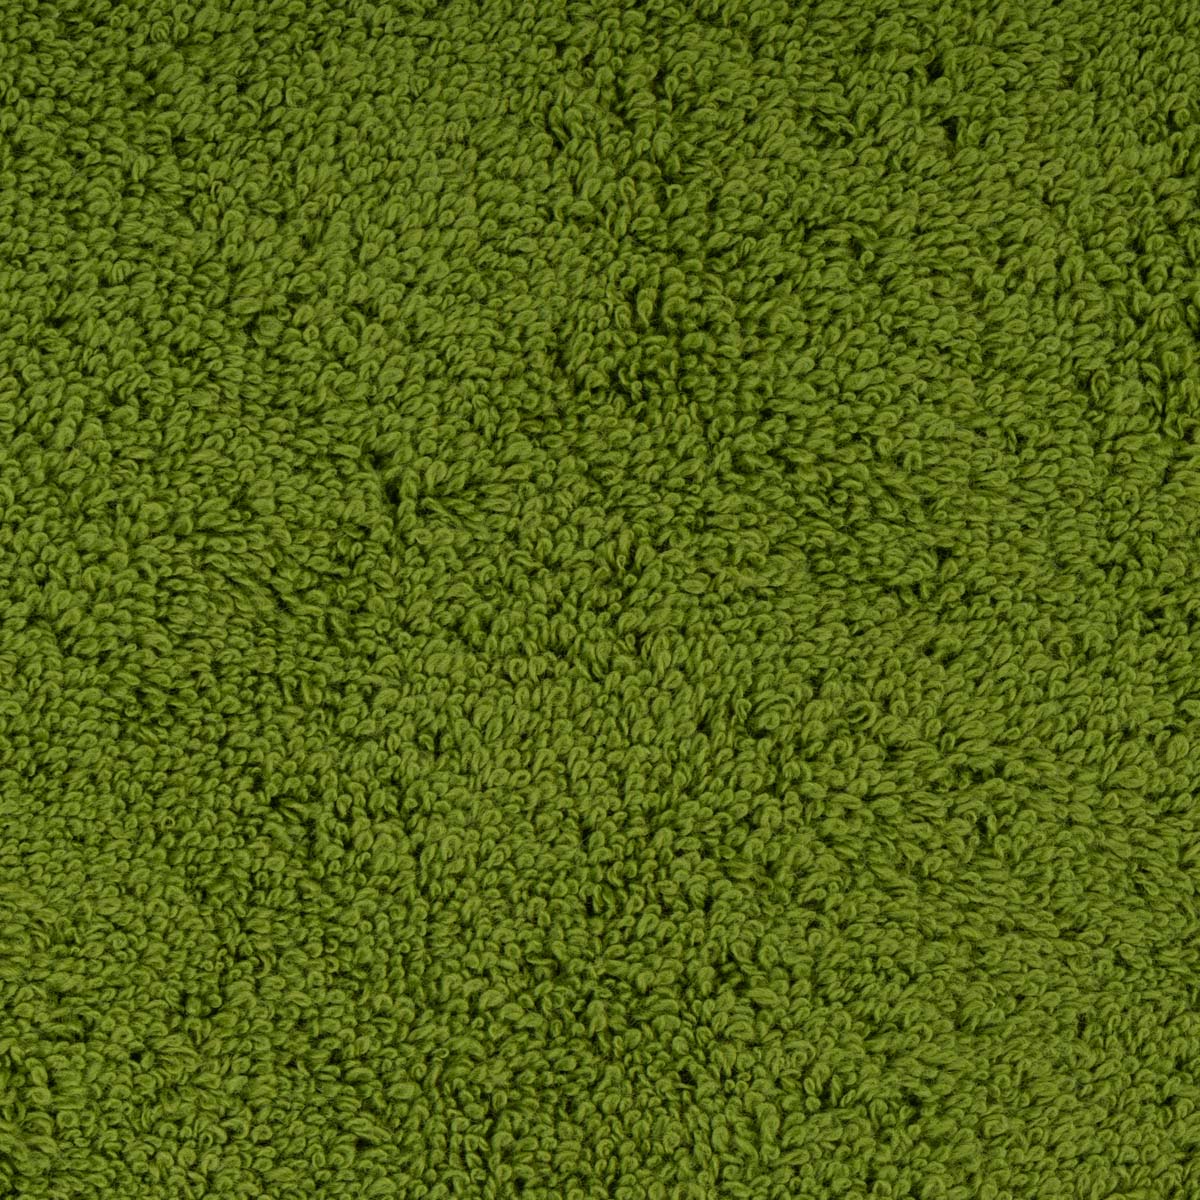 Полотенце махровое Lameirinho Aqua 70x140см, цвет оливковый Lameirinho 925177/musgo/070140 925177/musgo/070140 - фото 8